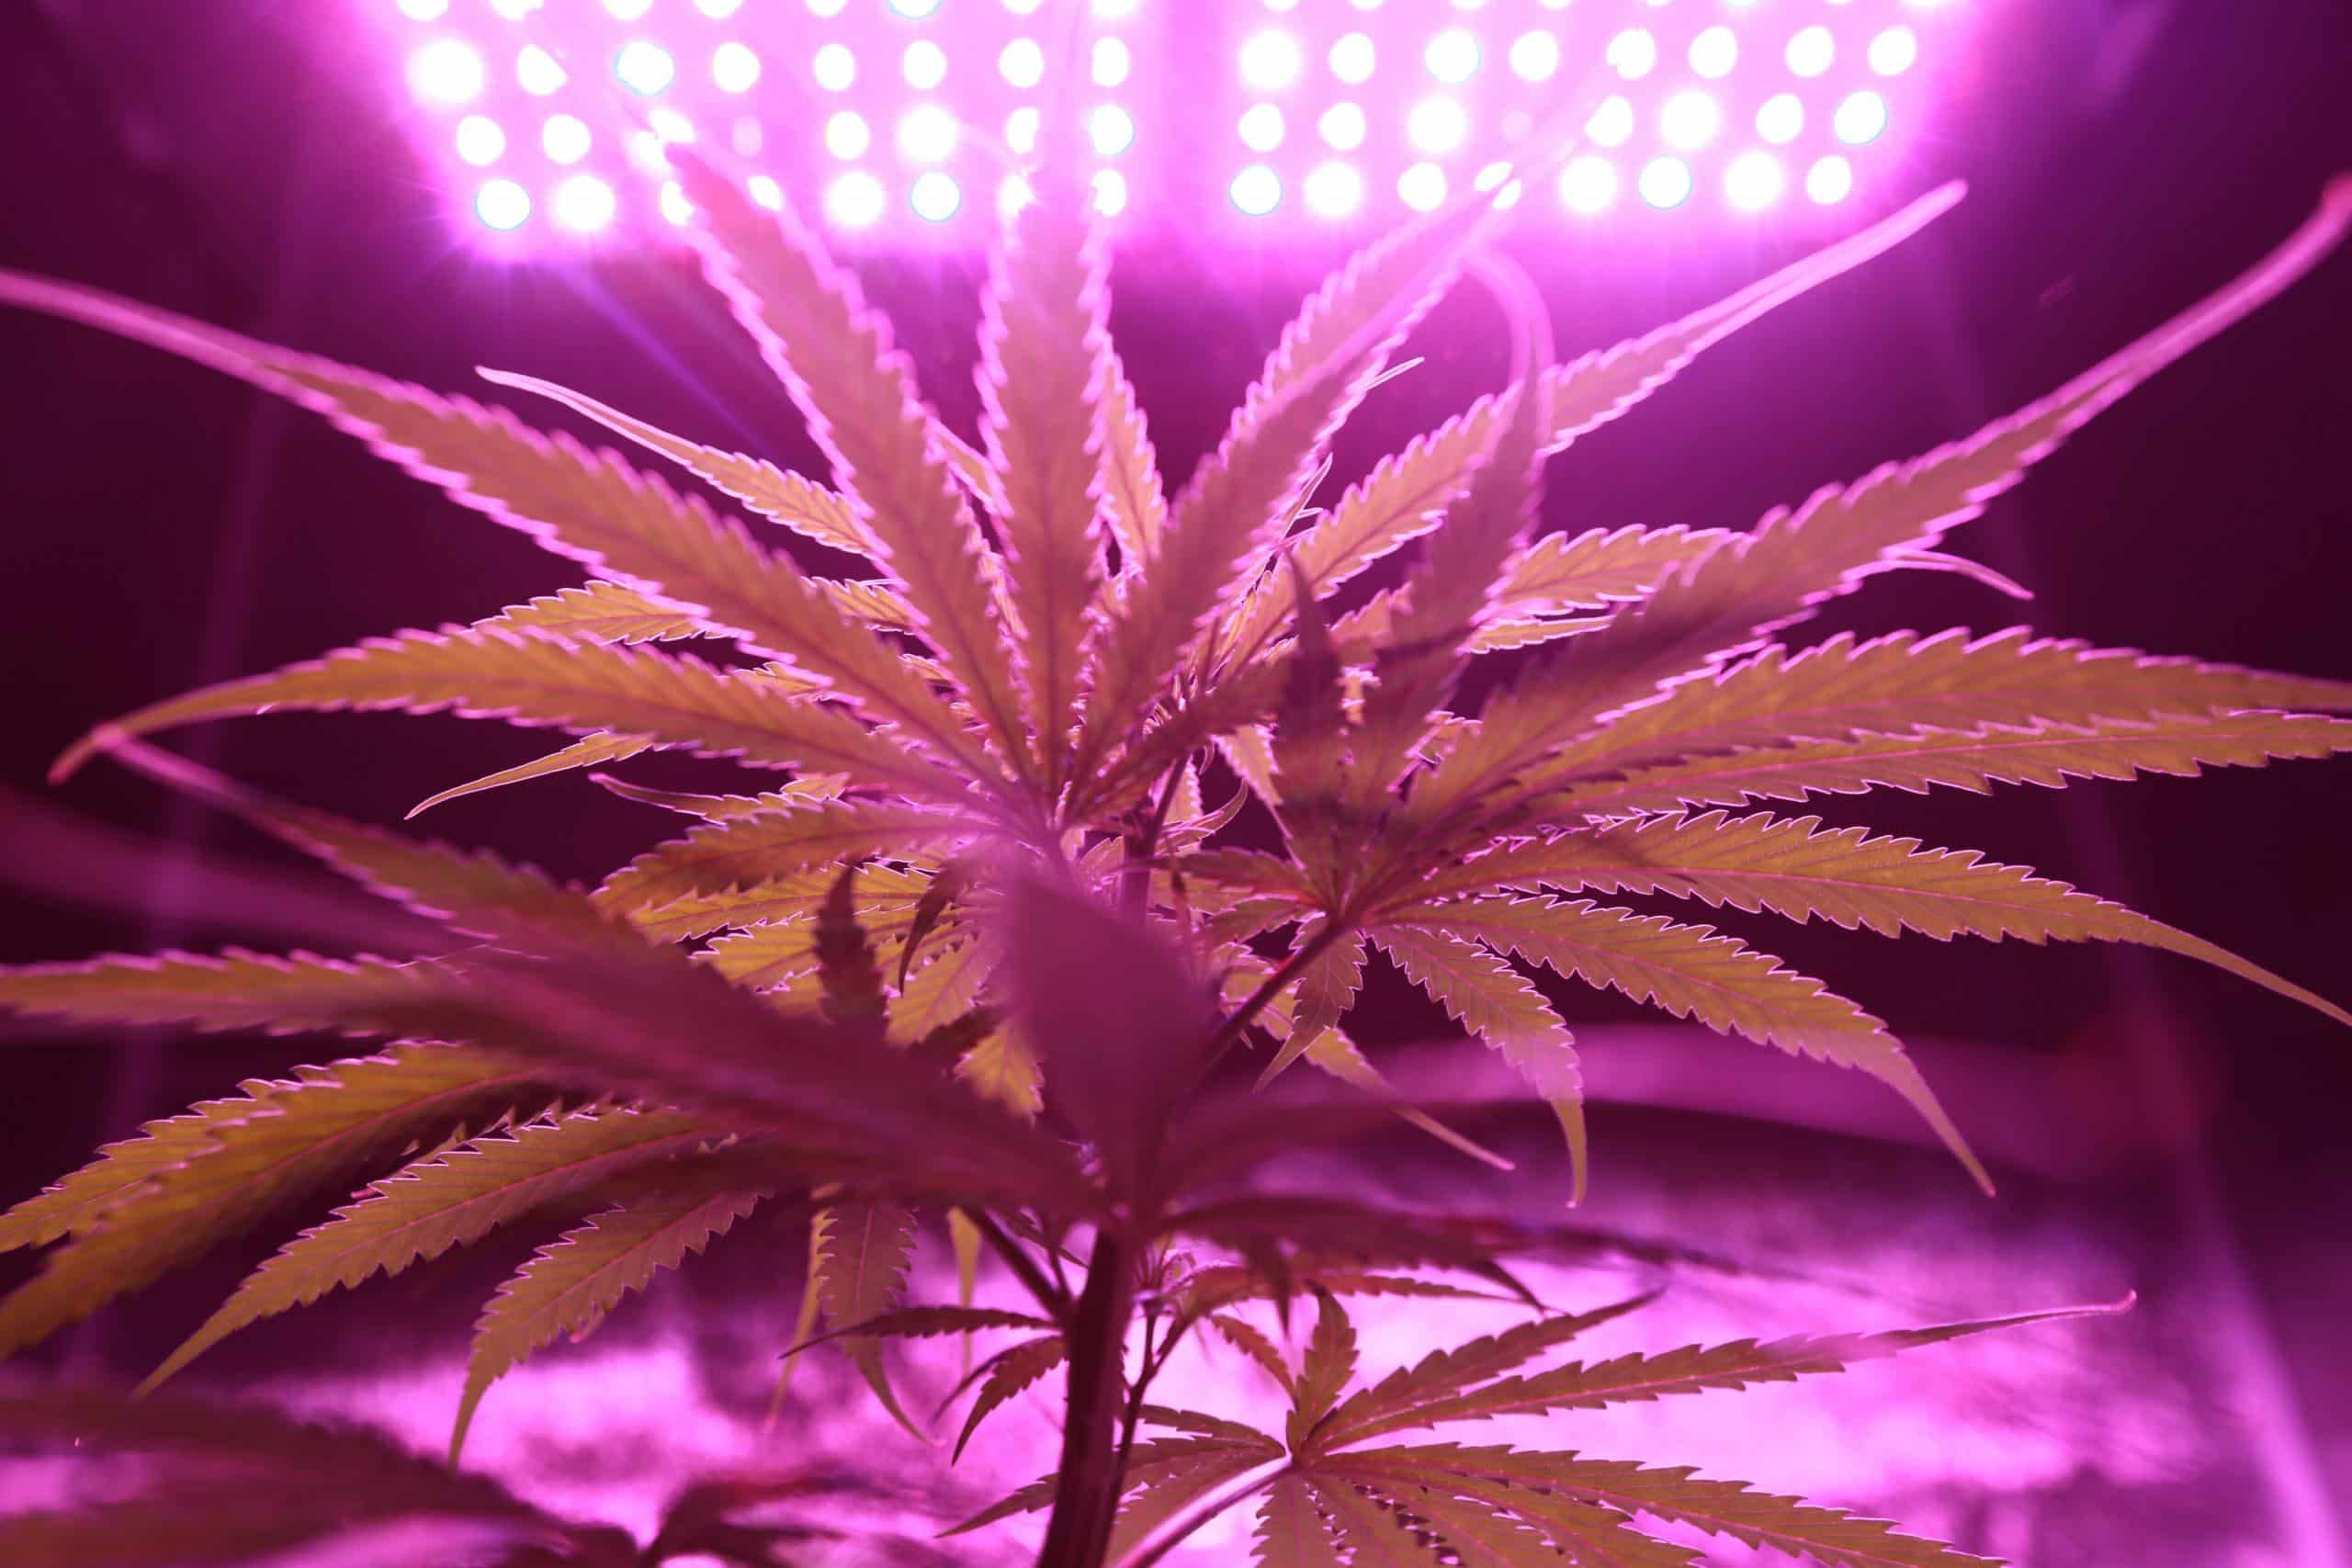 pianta di cannabis indoor